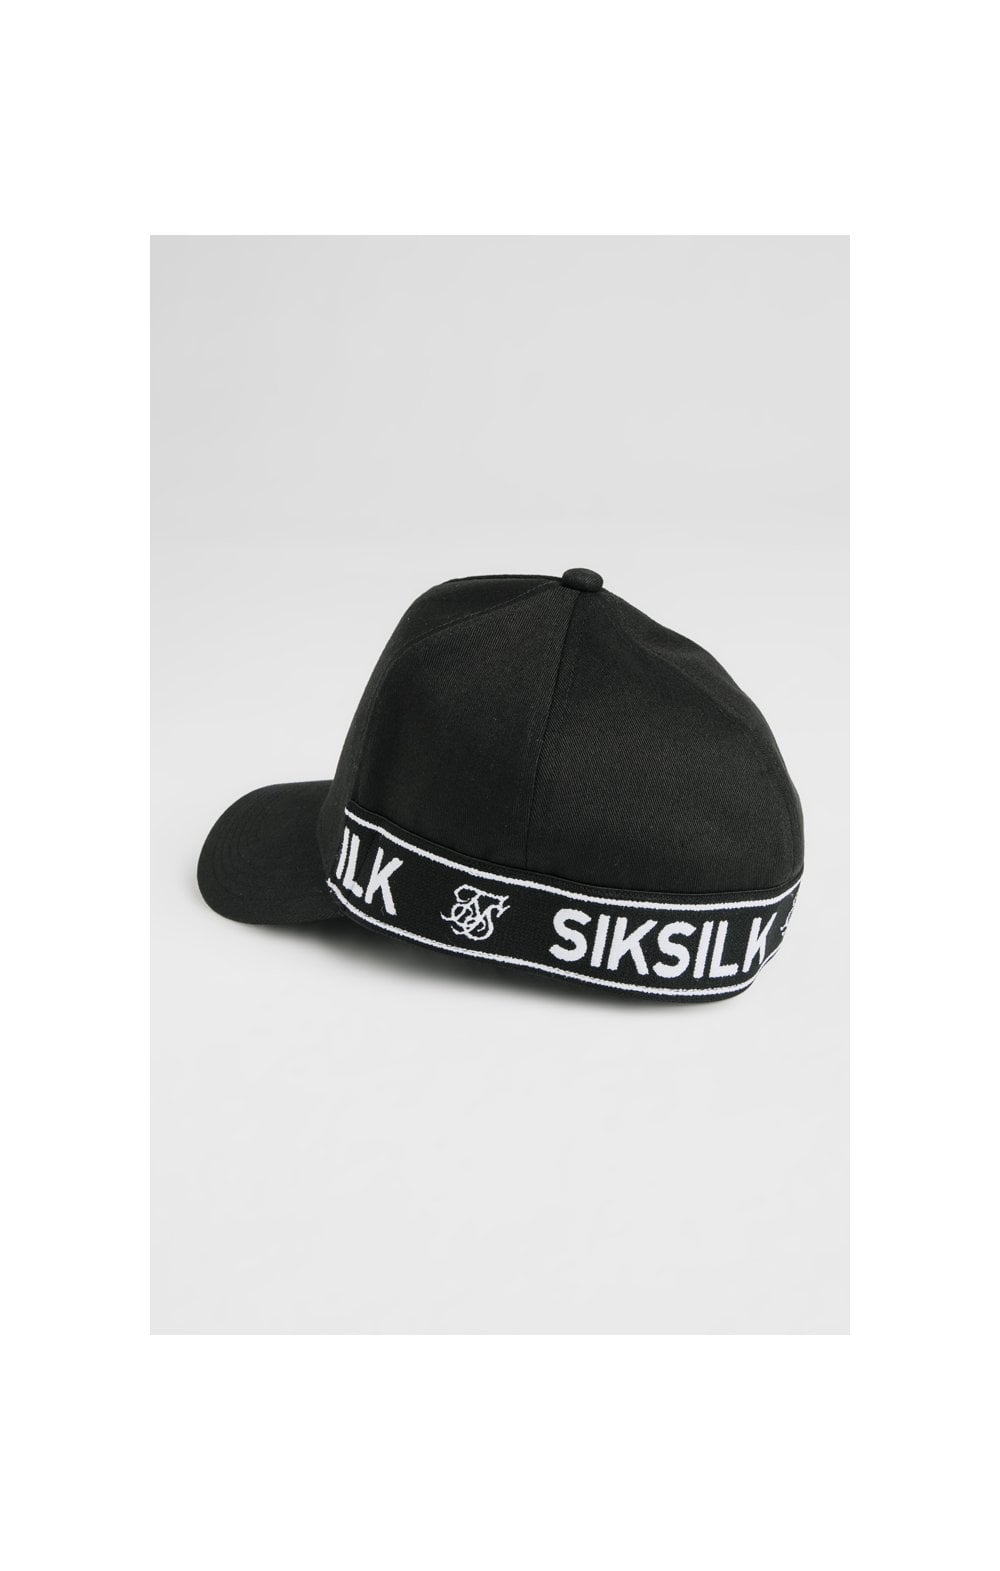 SikSilk Stretch Fit Full Trucker - Black (3)